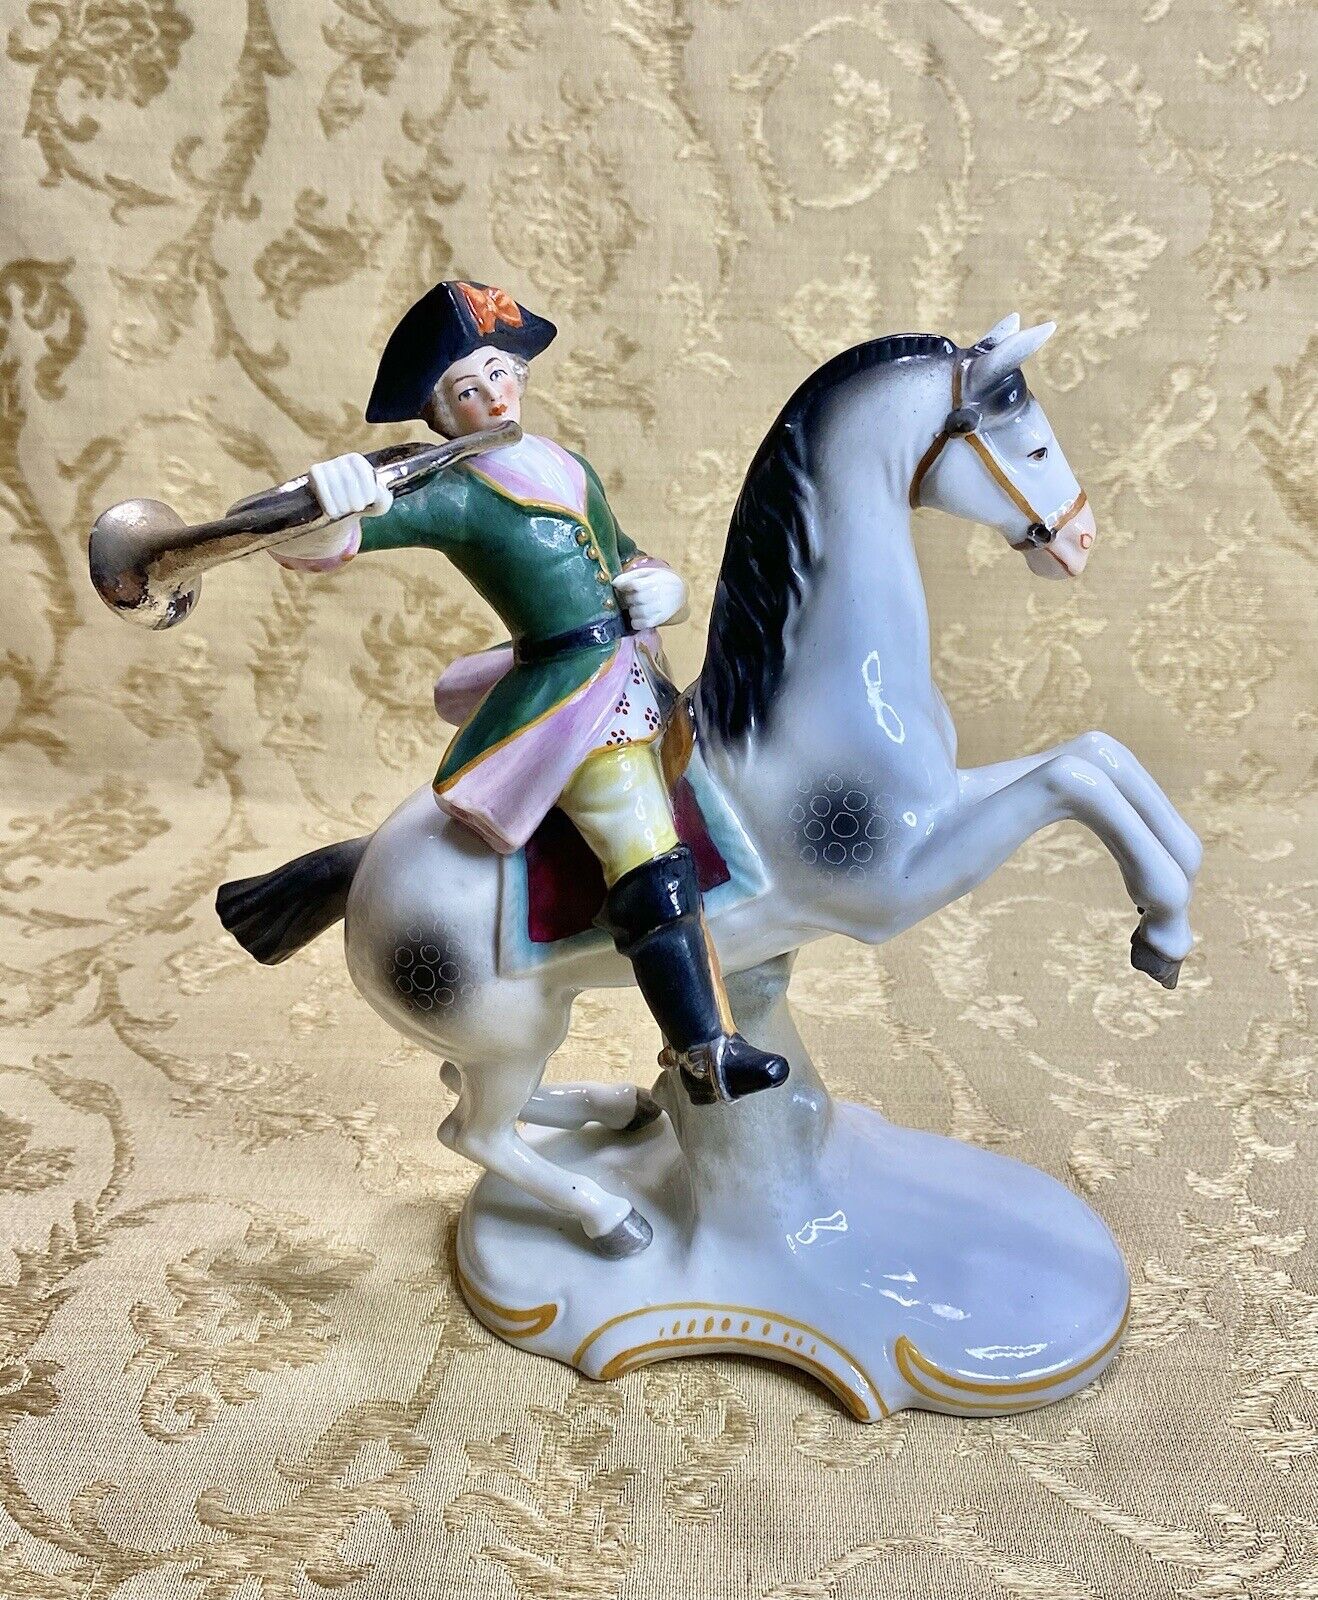 Scheibe Alsbach Dresden Sitzendorf Germany Antique Figurine Soldier On Horse